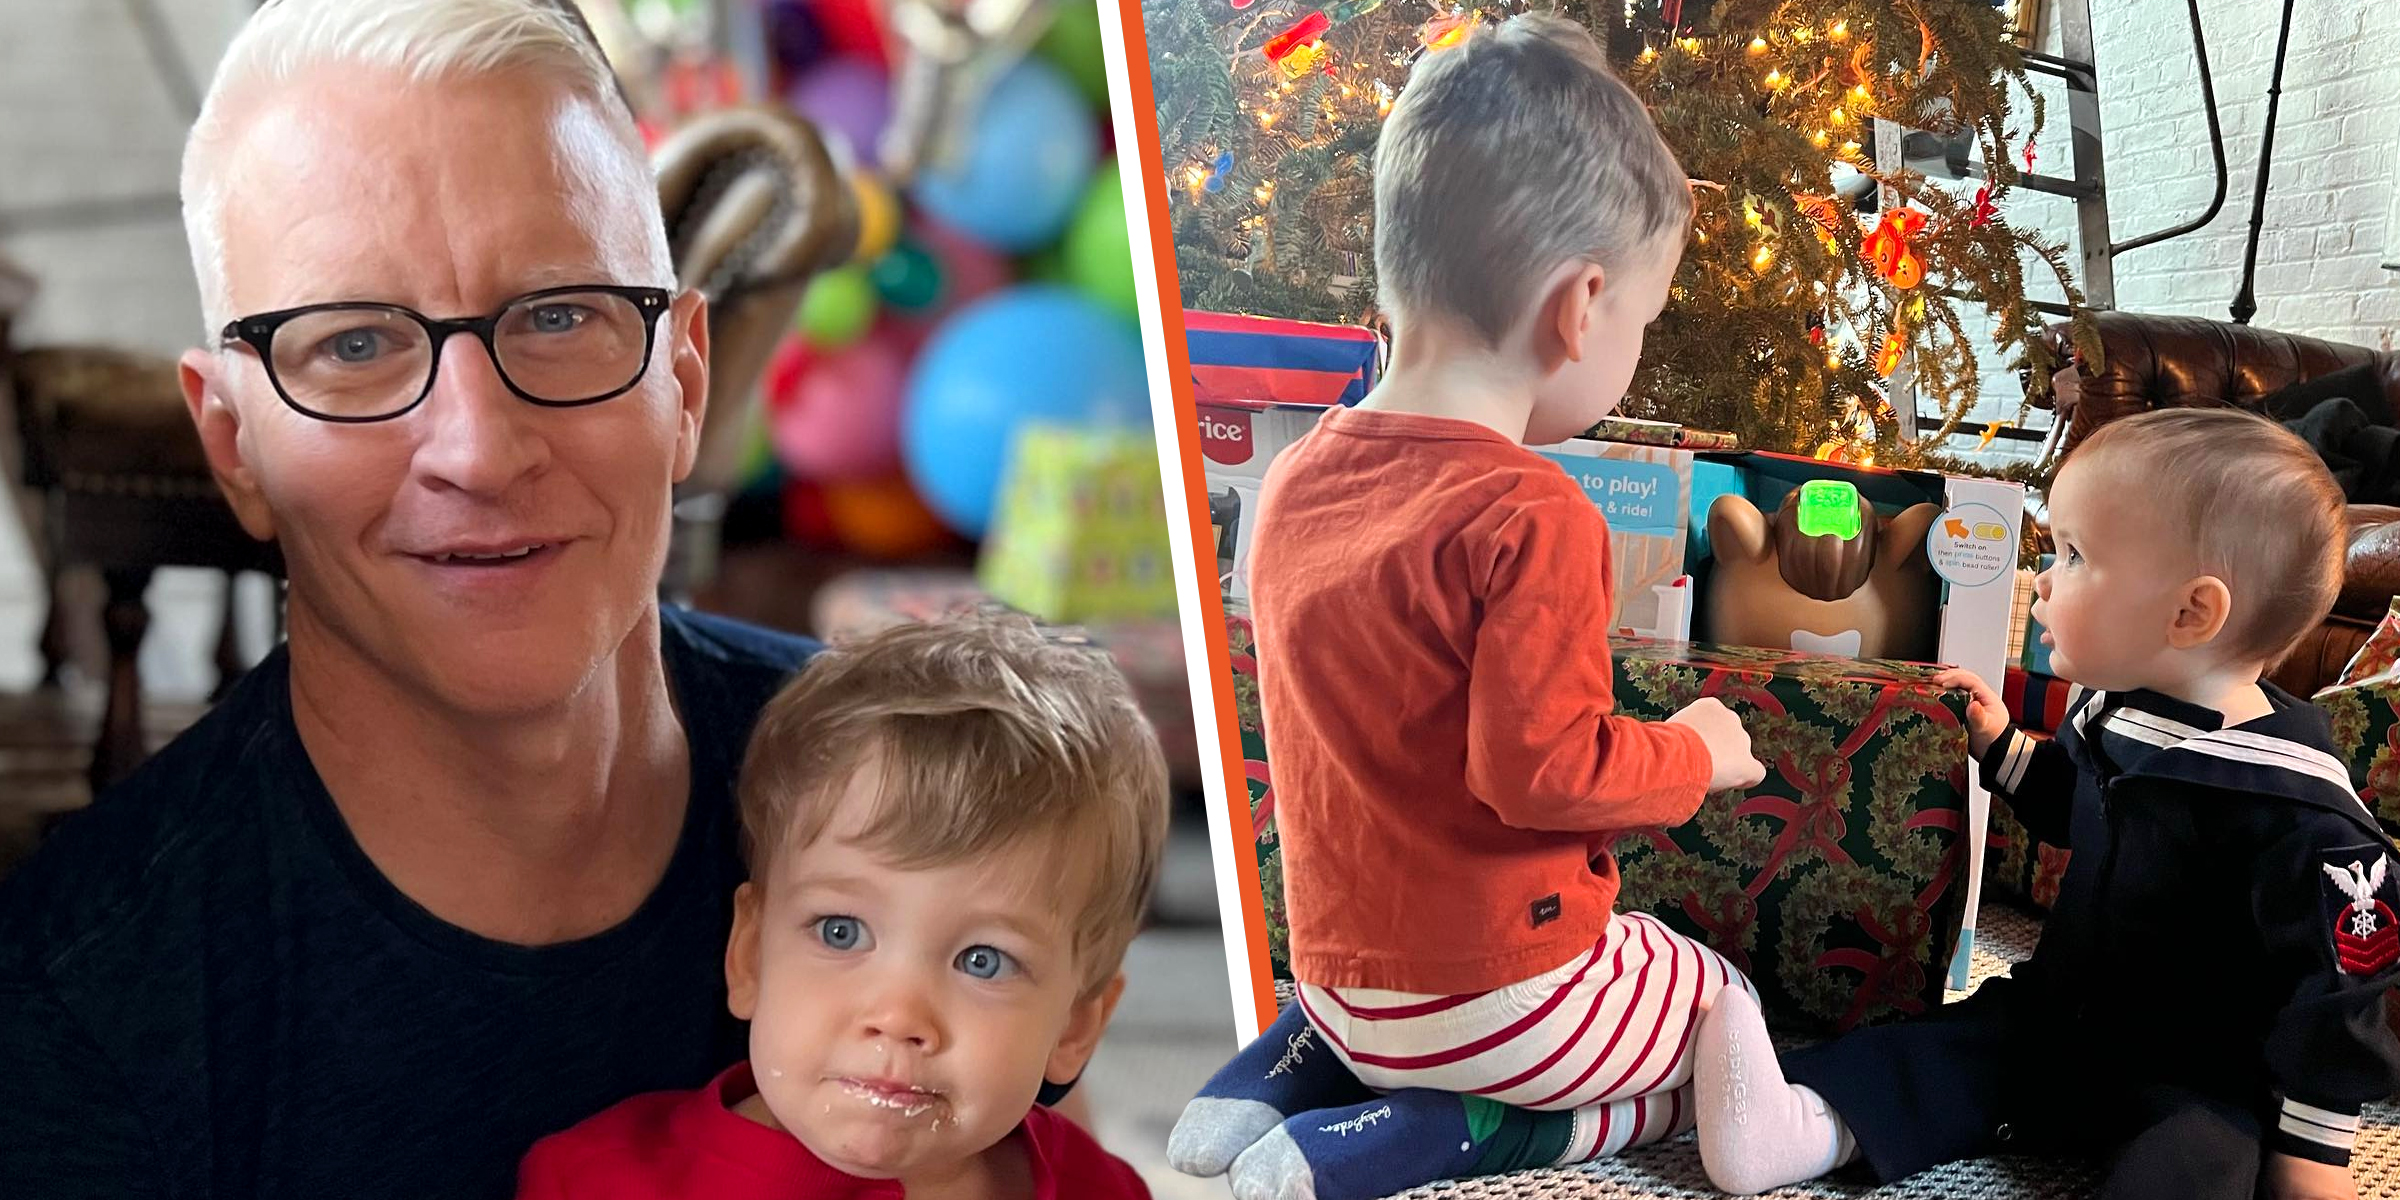 Anderson Cooper | Anderson Cooper's children | Source: Instagram/andersoncooper